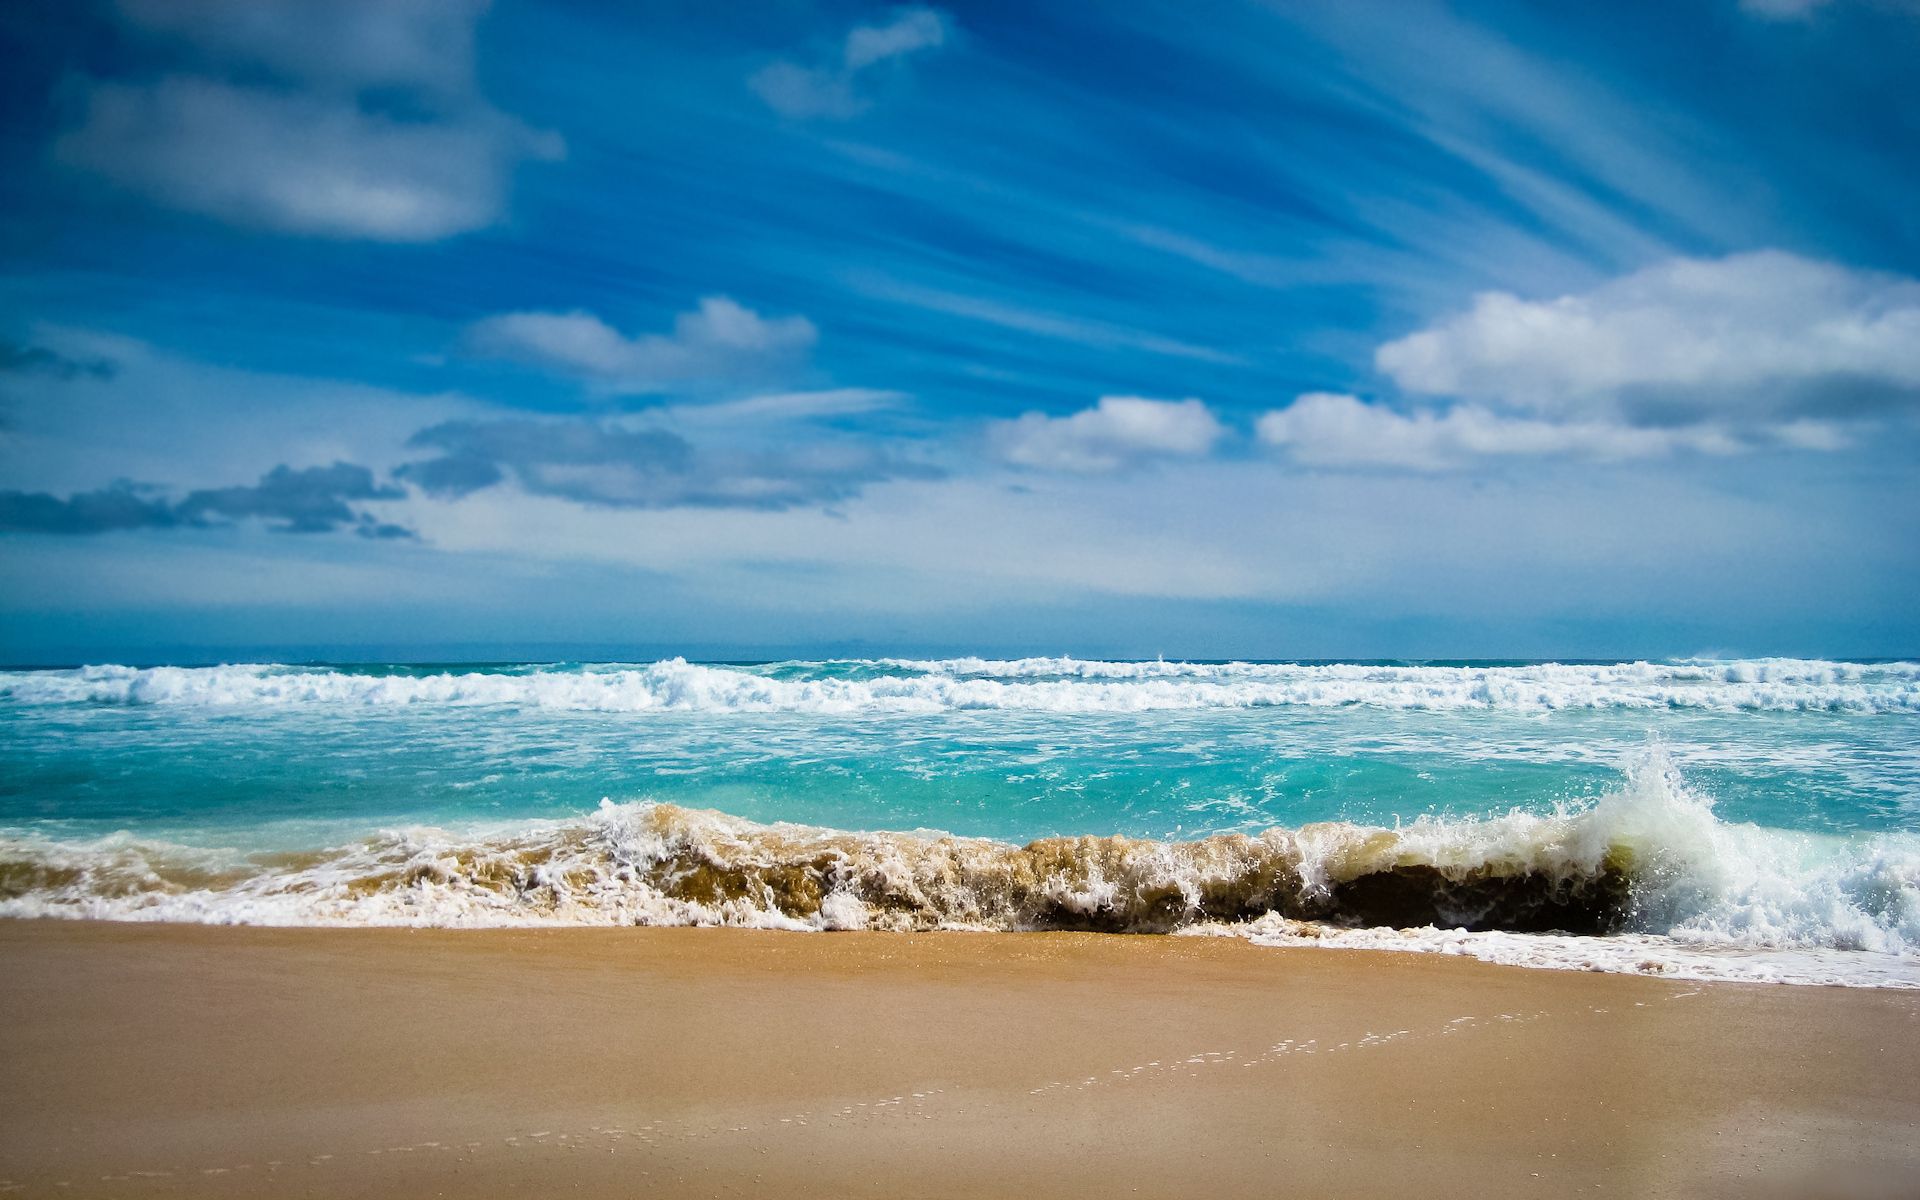 Скачать обои бесплатно Голубая Вода, Берег, Залив, Природа, Океан, Море, Волны, Пляж картинка на рабочий стол ПК